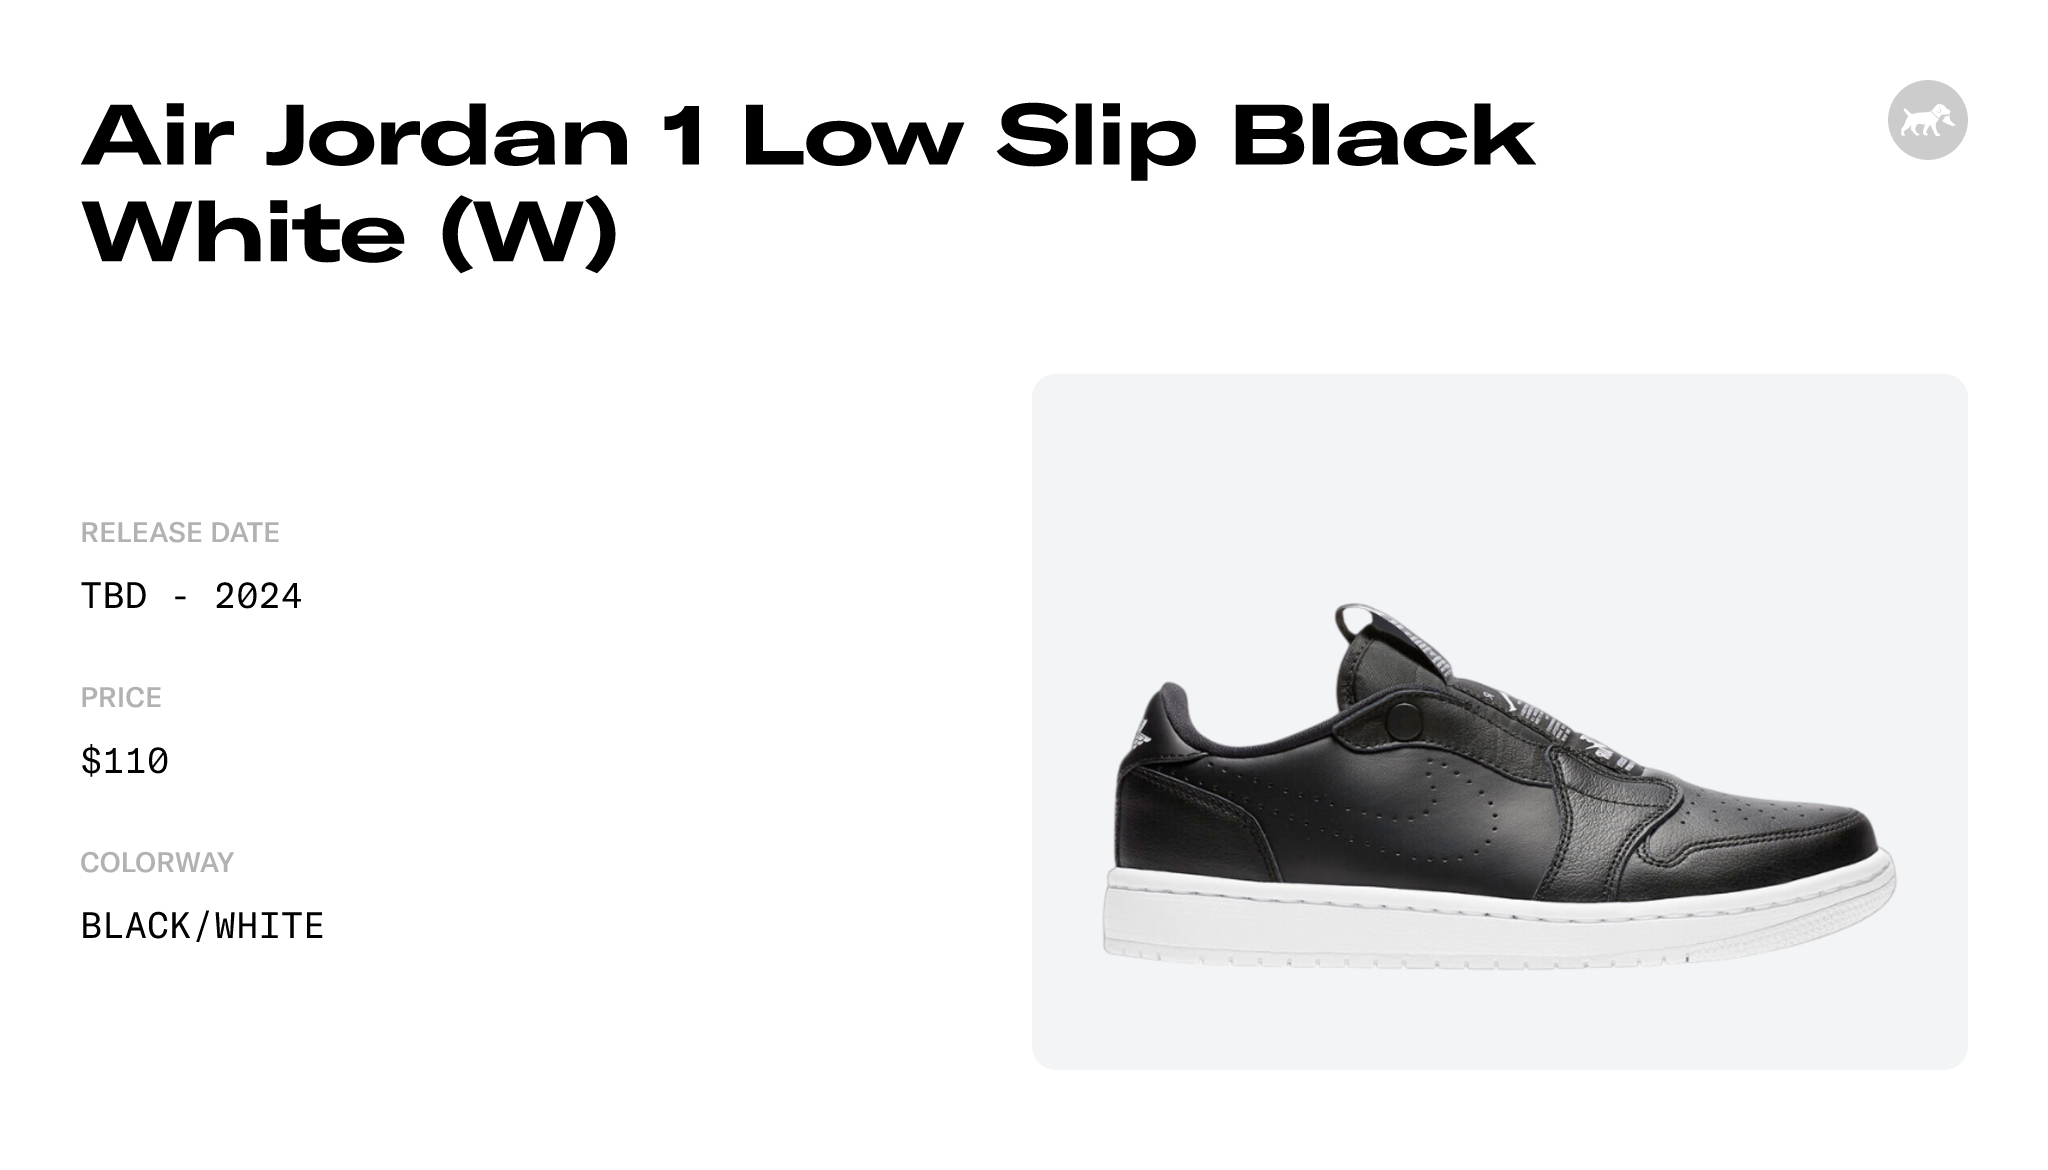 Air Jordan 1 Low Slip Black White (W) - AV3918-001 Raffles and Release Date